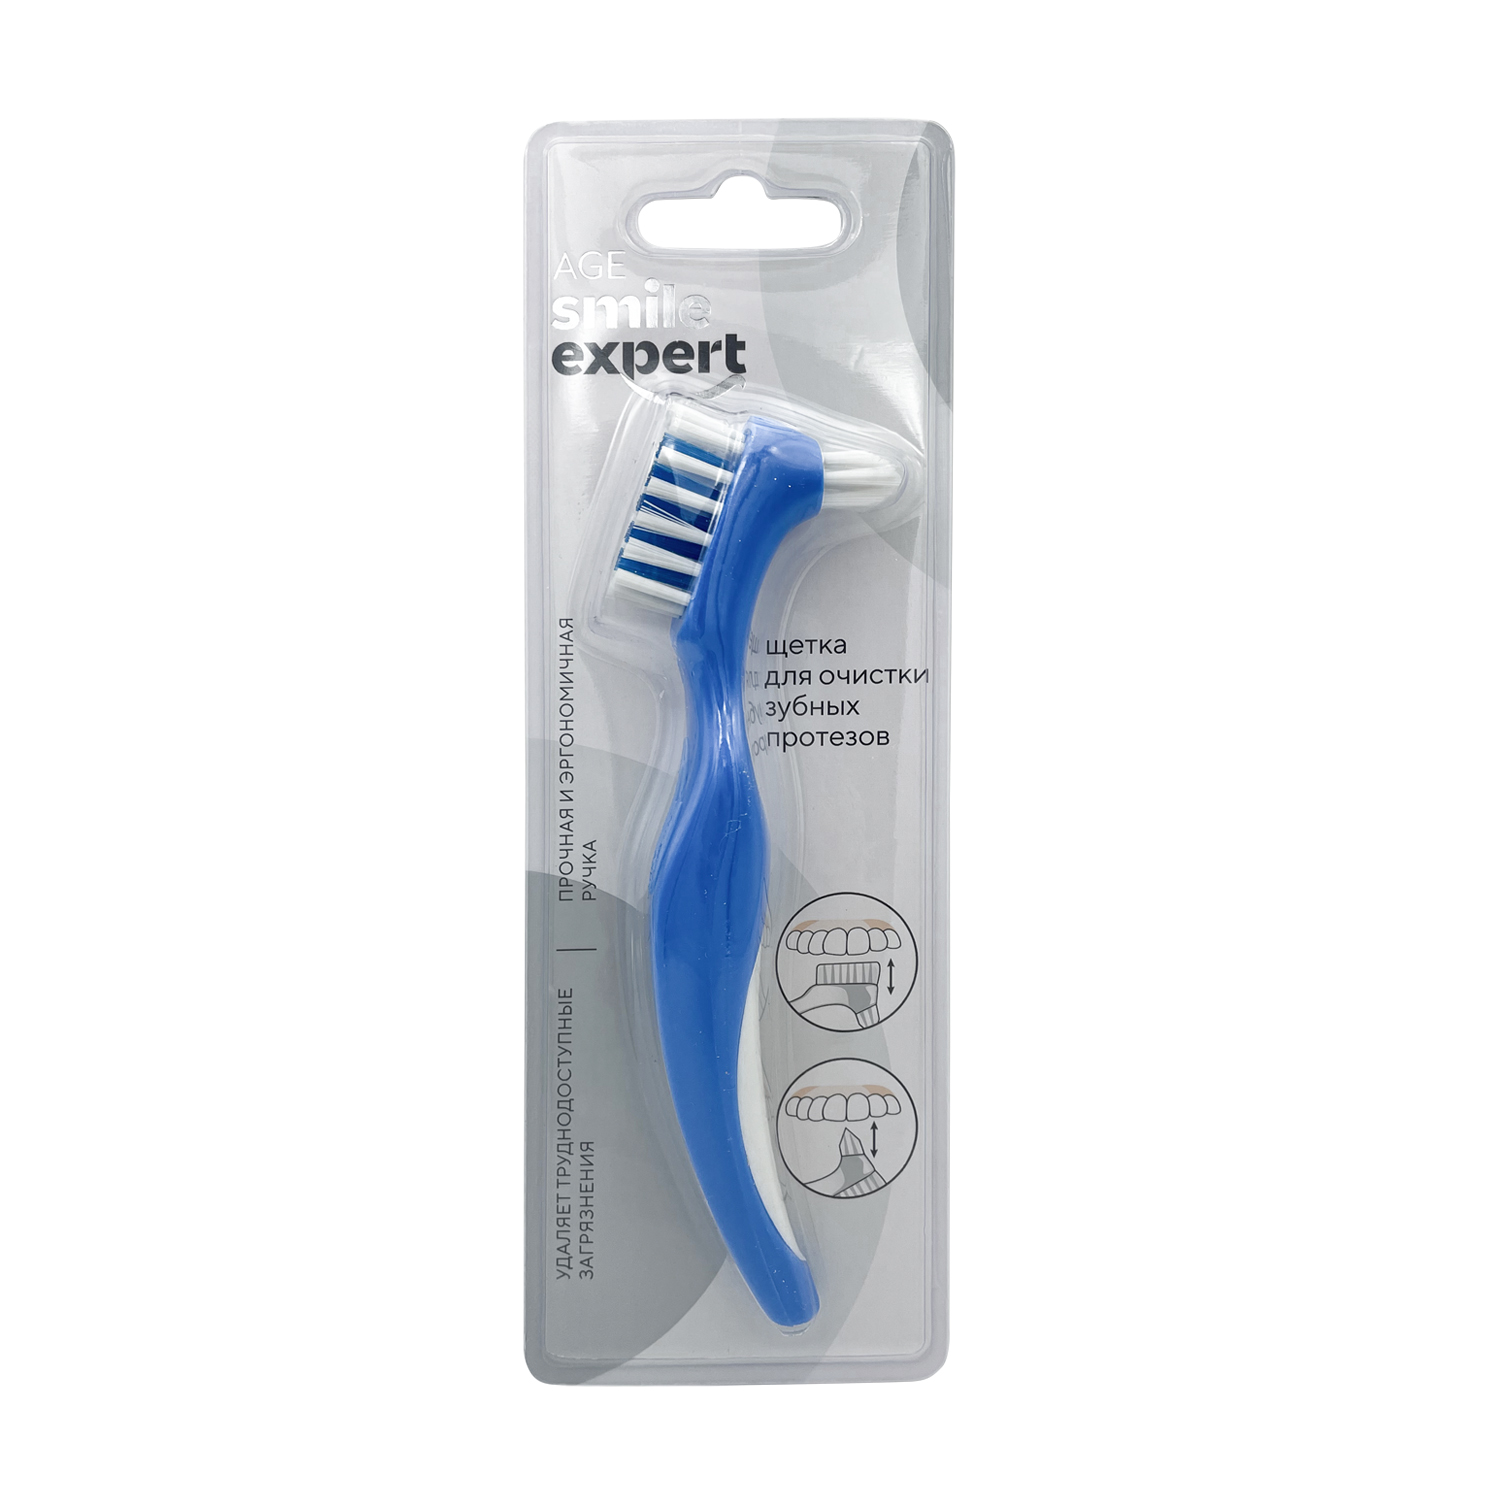 Купить Смайл Эксперт Эйдж щетка для очистки зубных протезов №1, New Phenix Home Products Ma CN